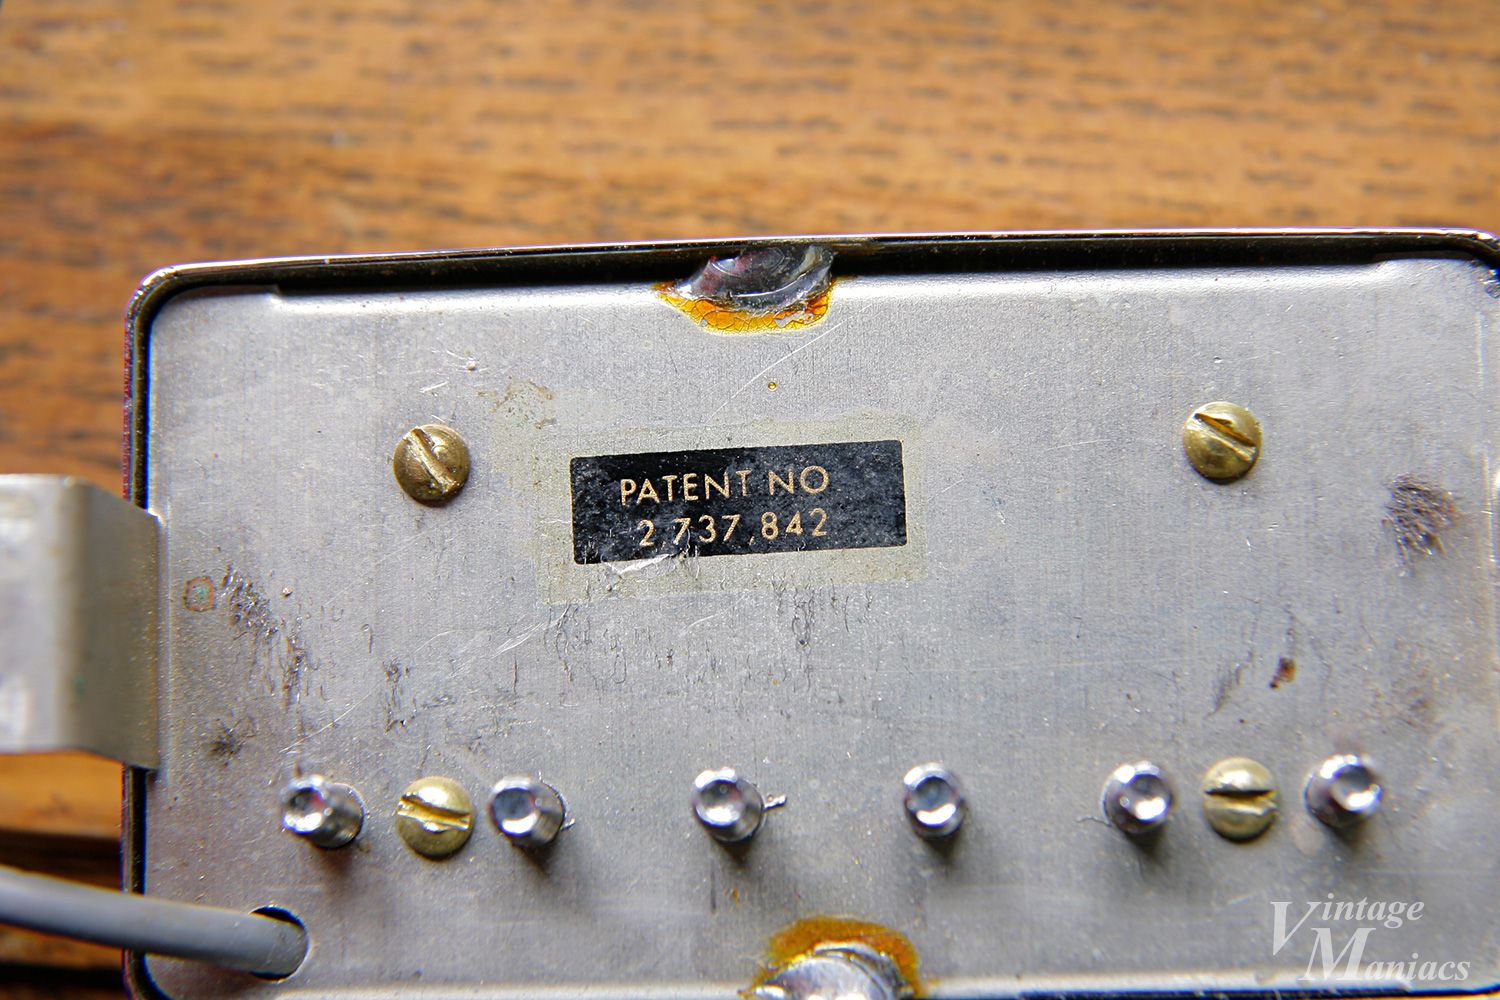 Patナンバーステッカーの復刻 - ギブソンのナンバードPAF | Vintage